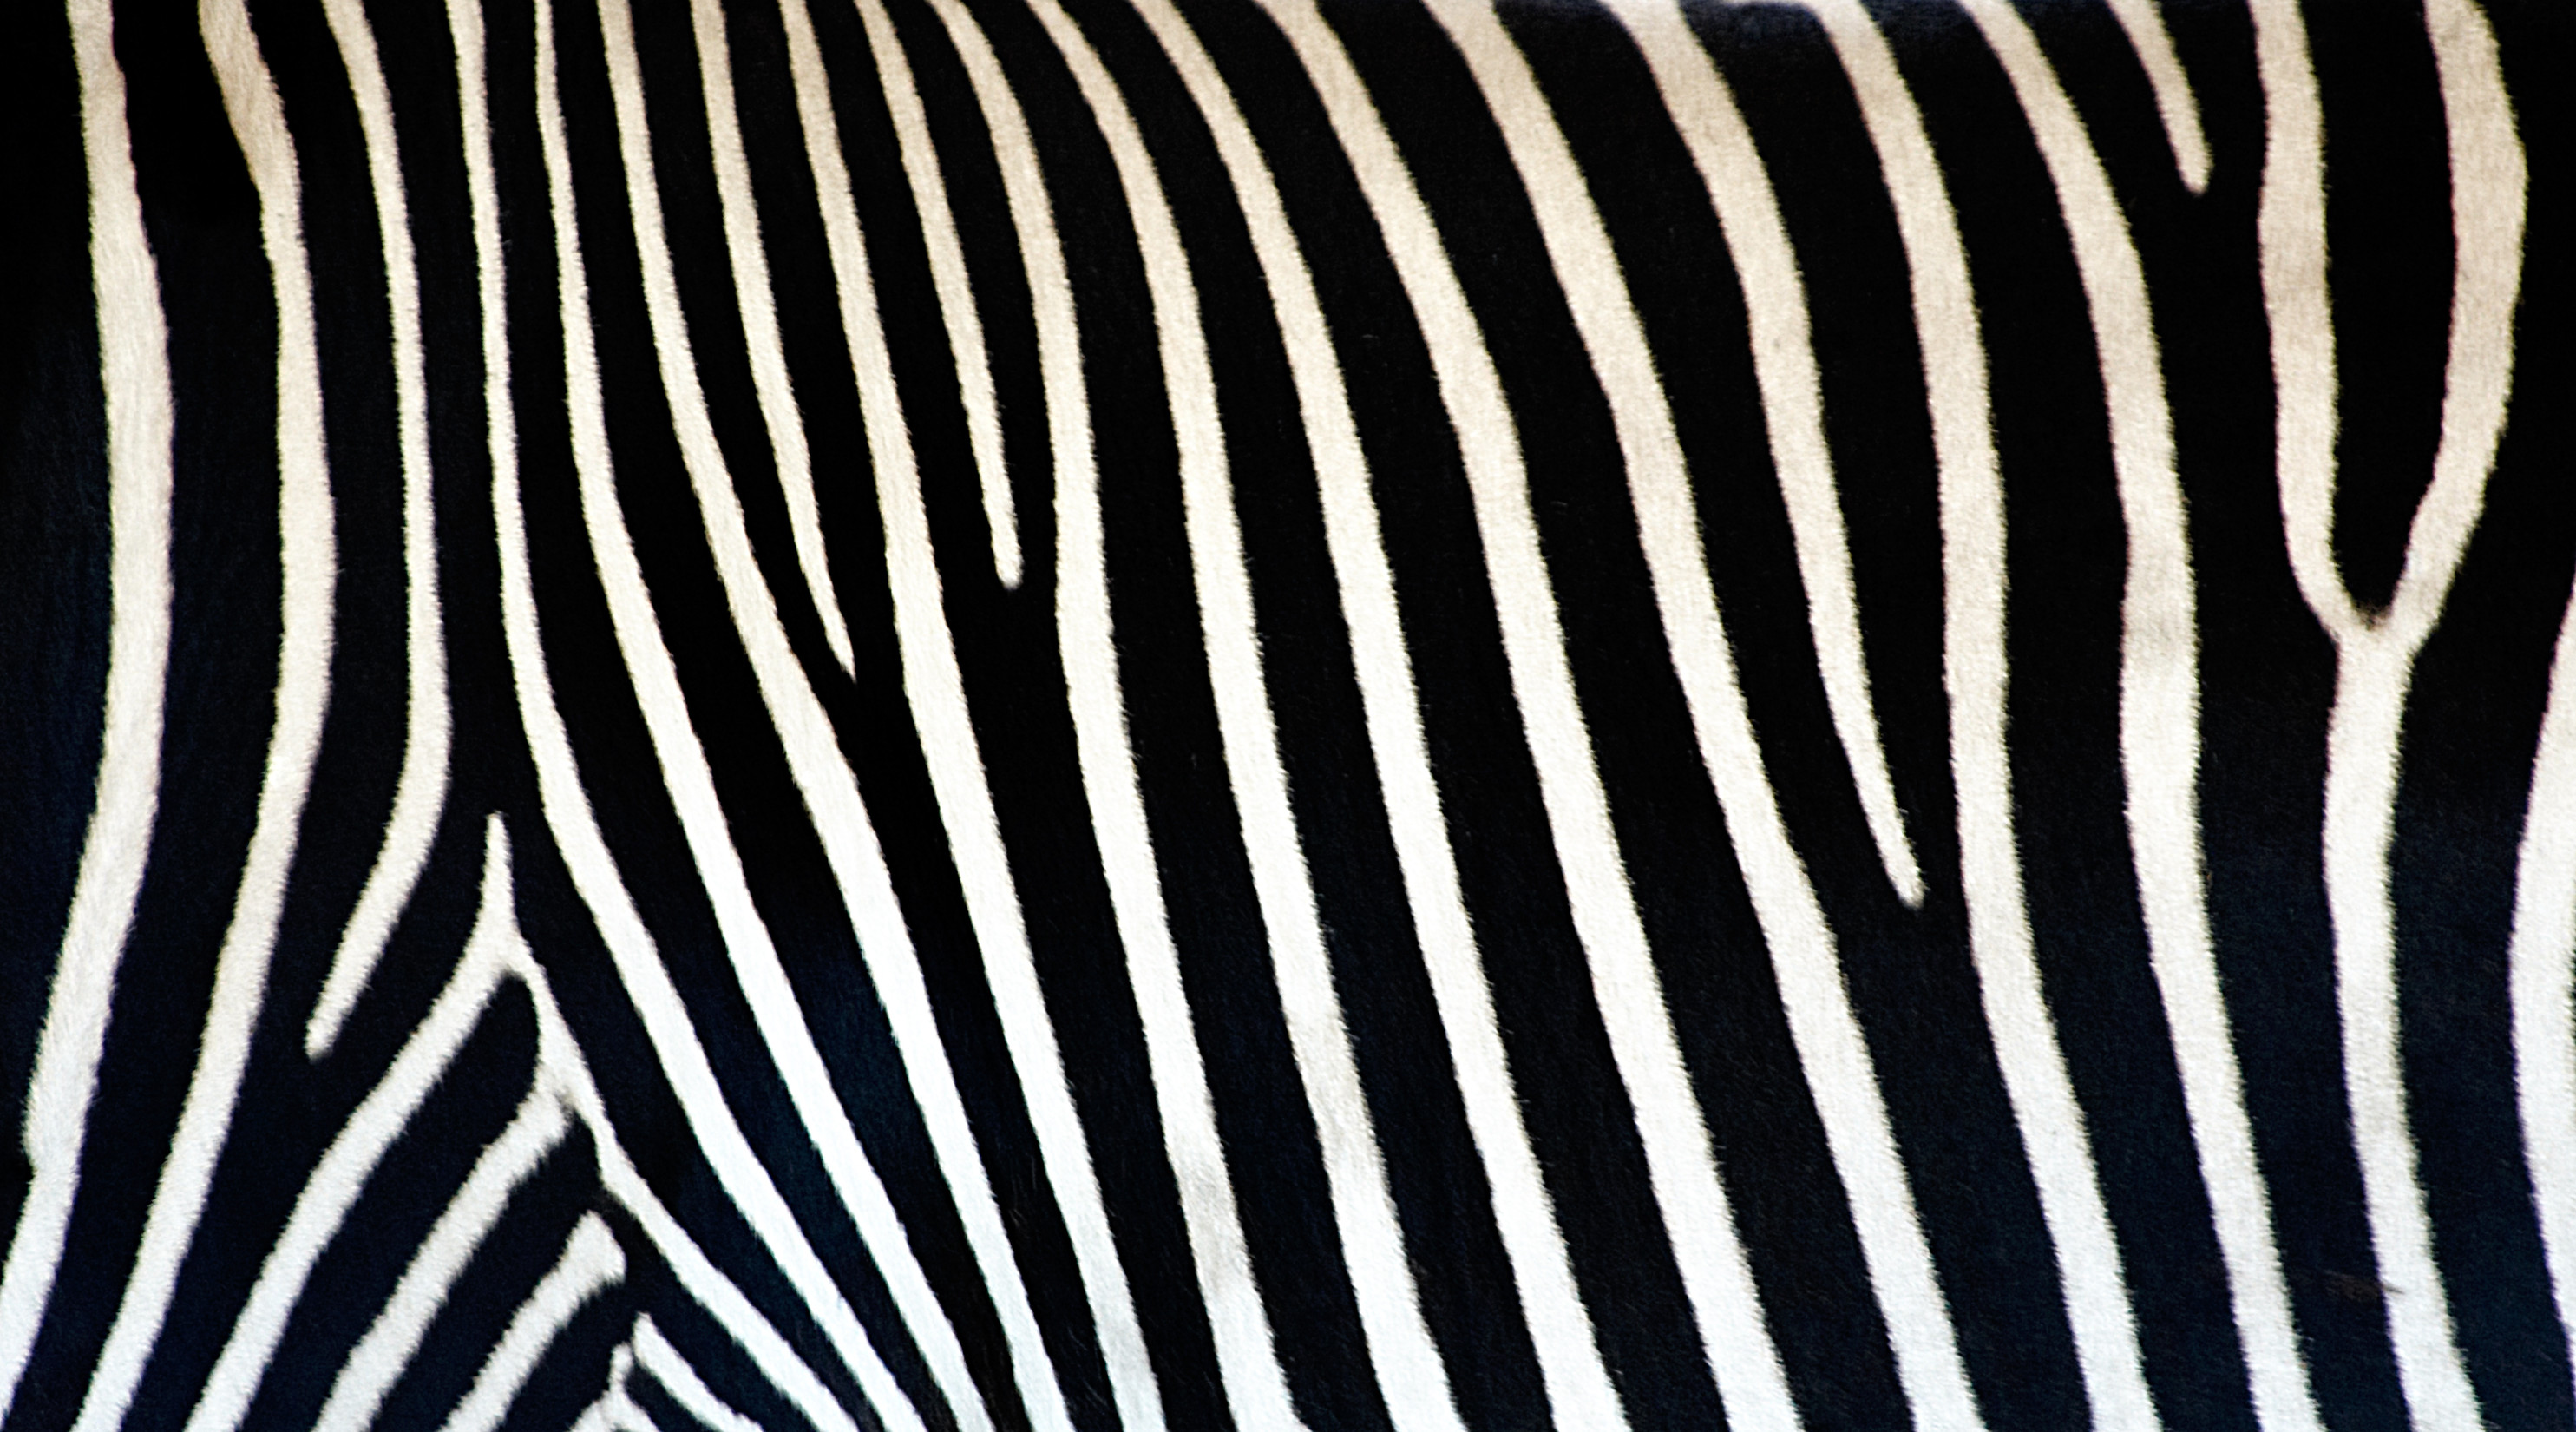 carta da parati a strisce zebrate,modello,monocromatico,bianco e nero,linea,design